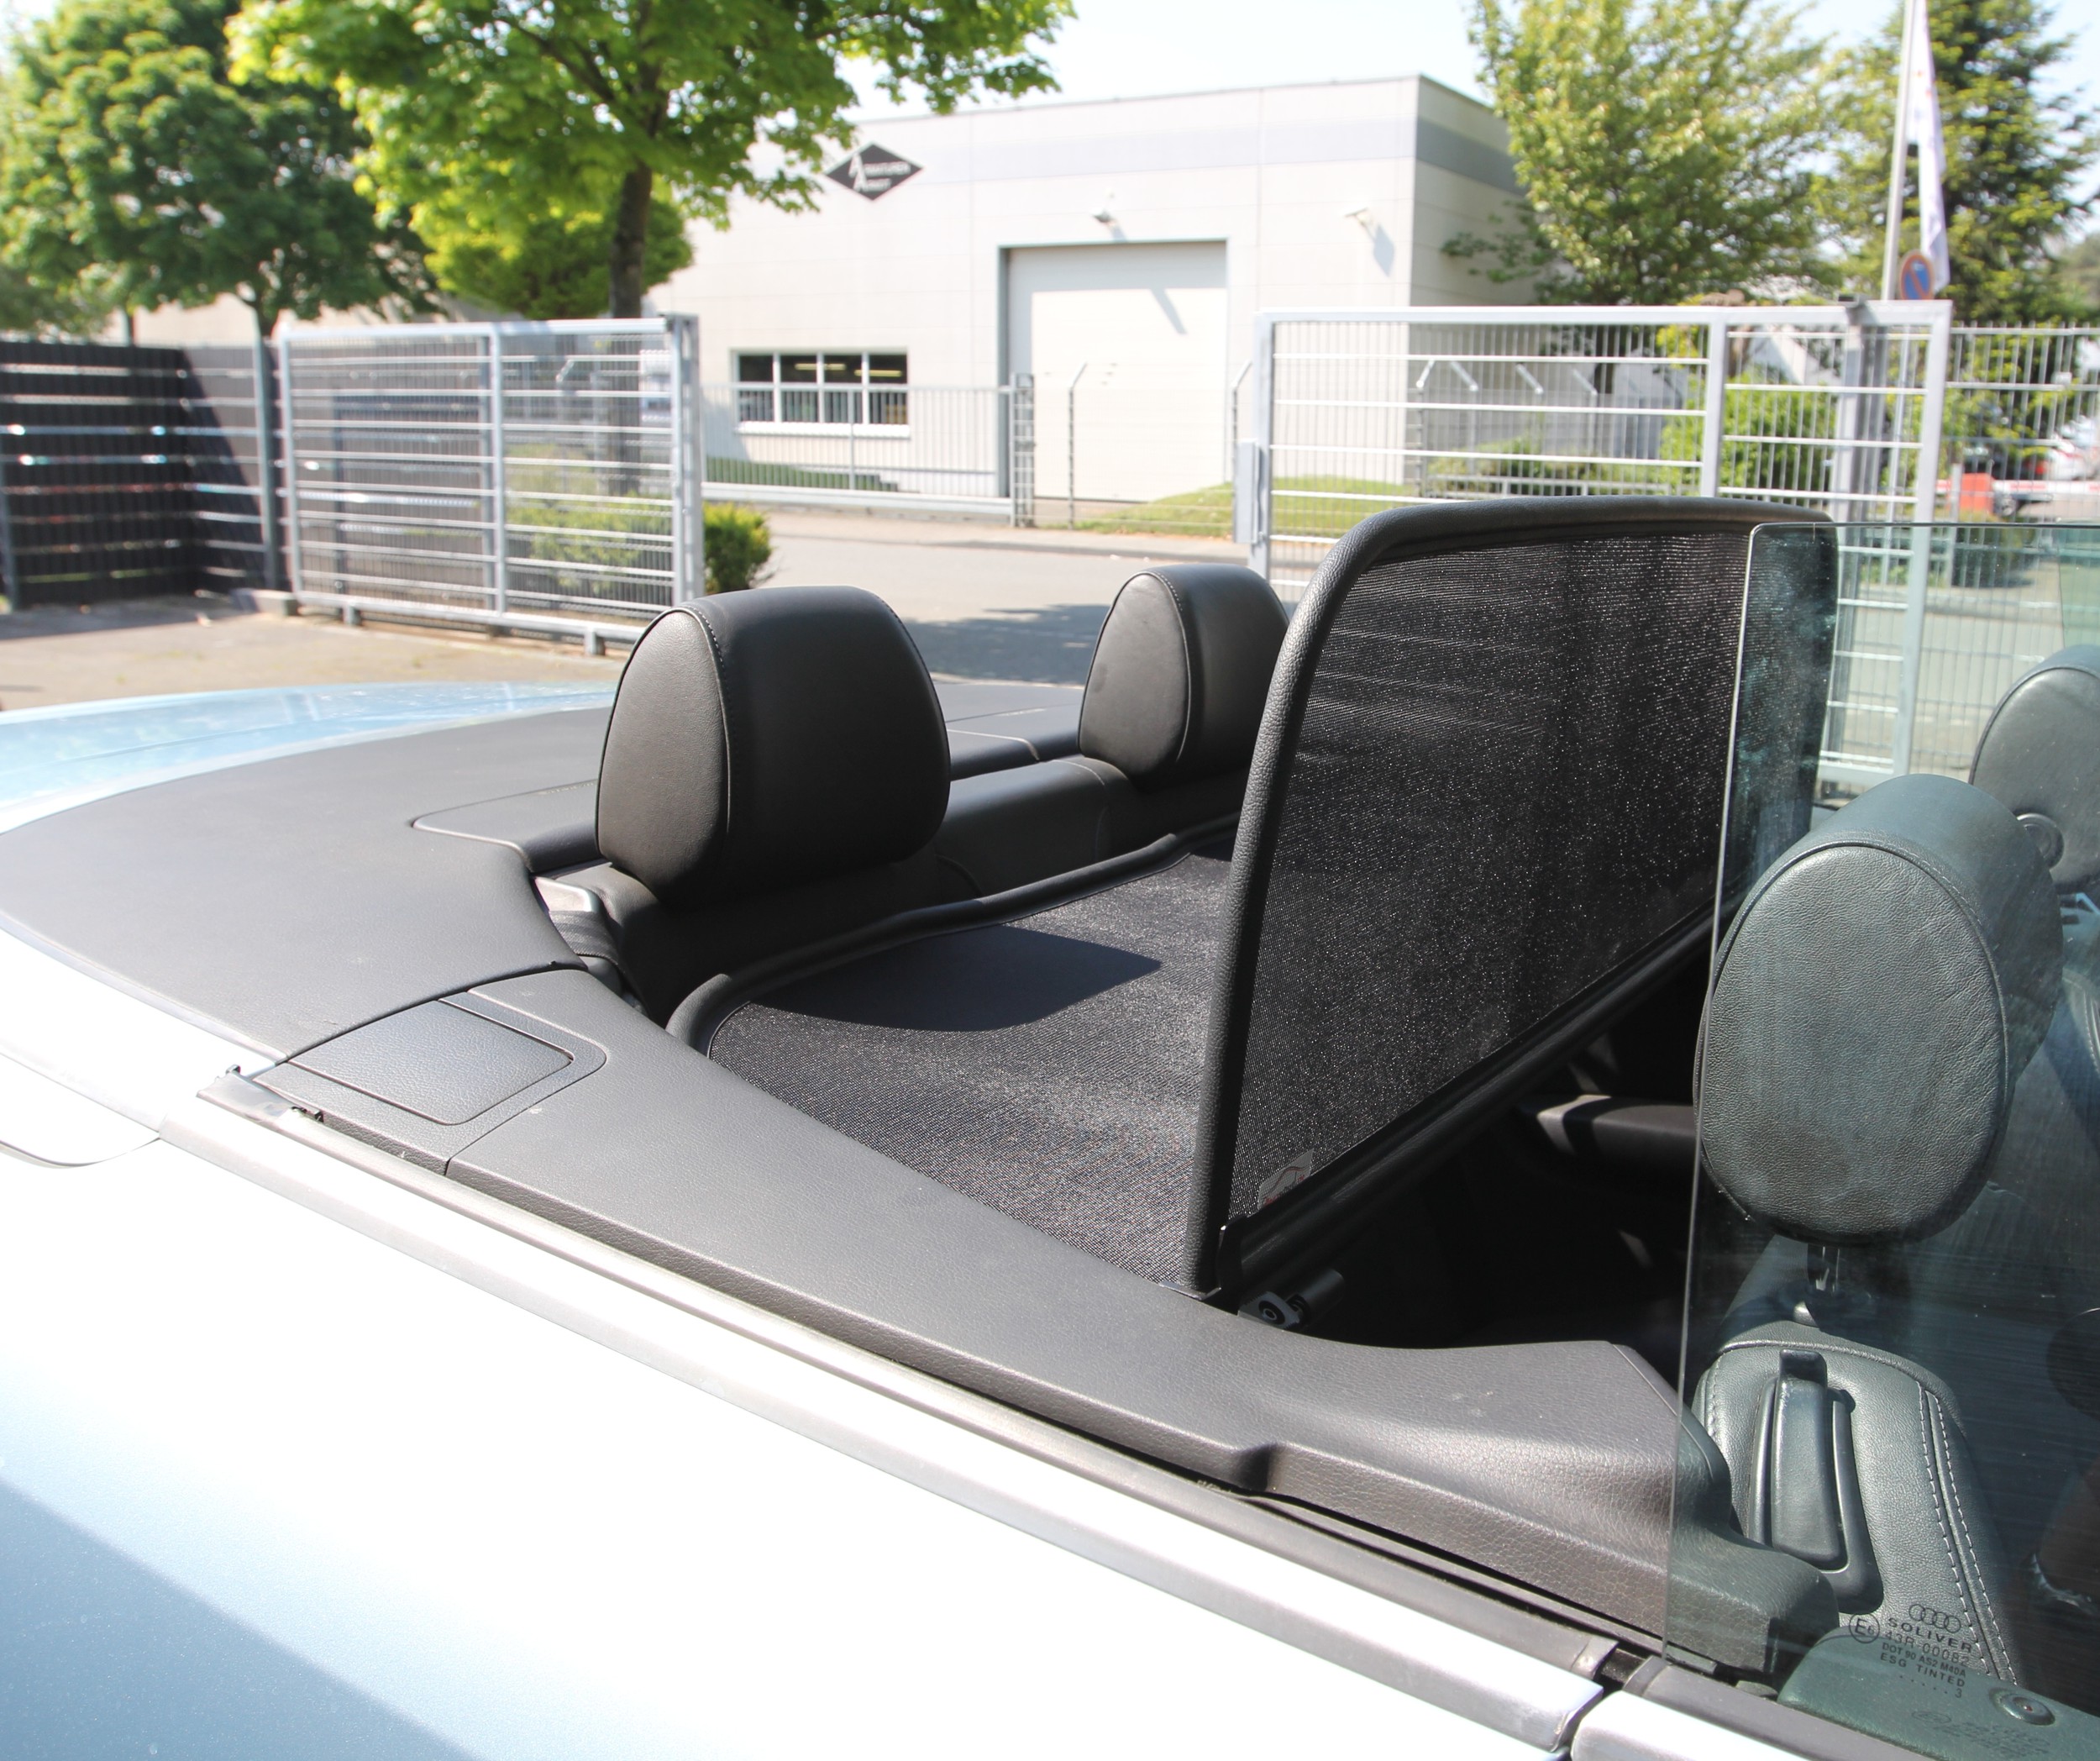 AIRAX Windschott & Tasche für Audi A4 Typ B6/B7 mit Schnellverschlus